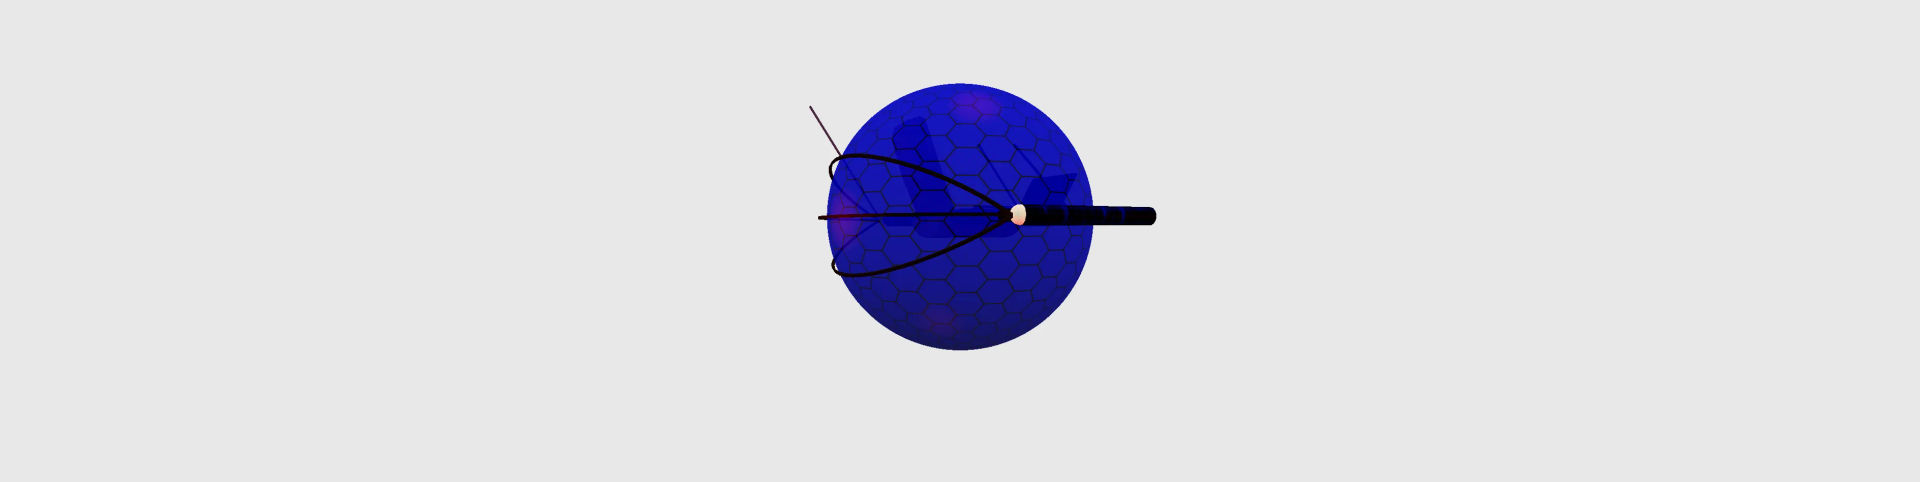 gyrosphere.fbx